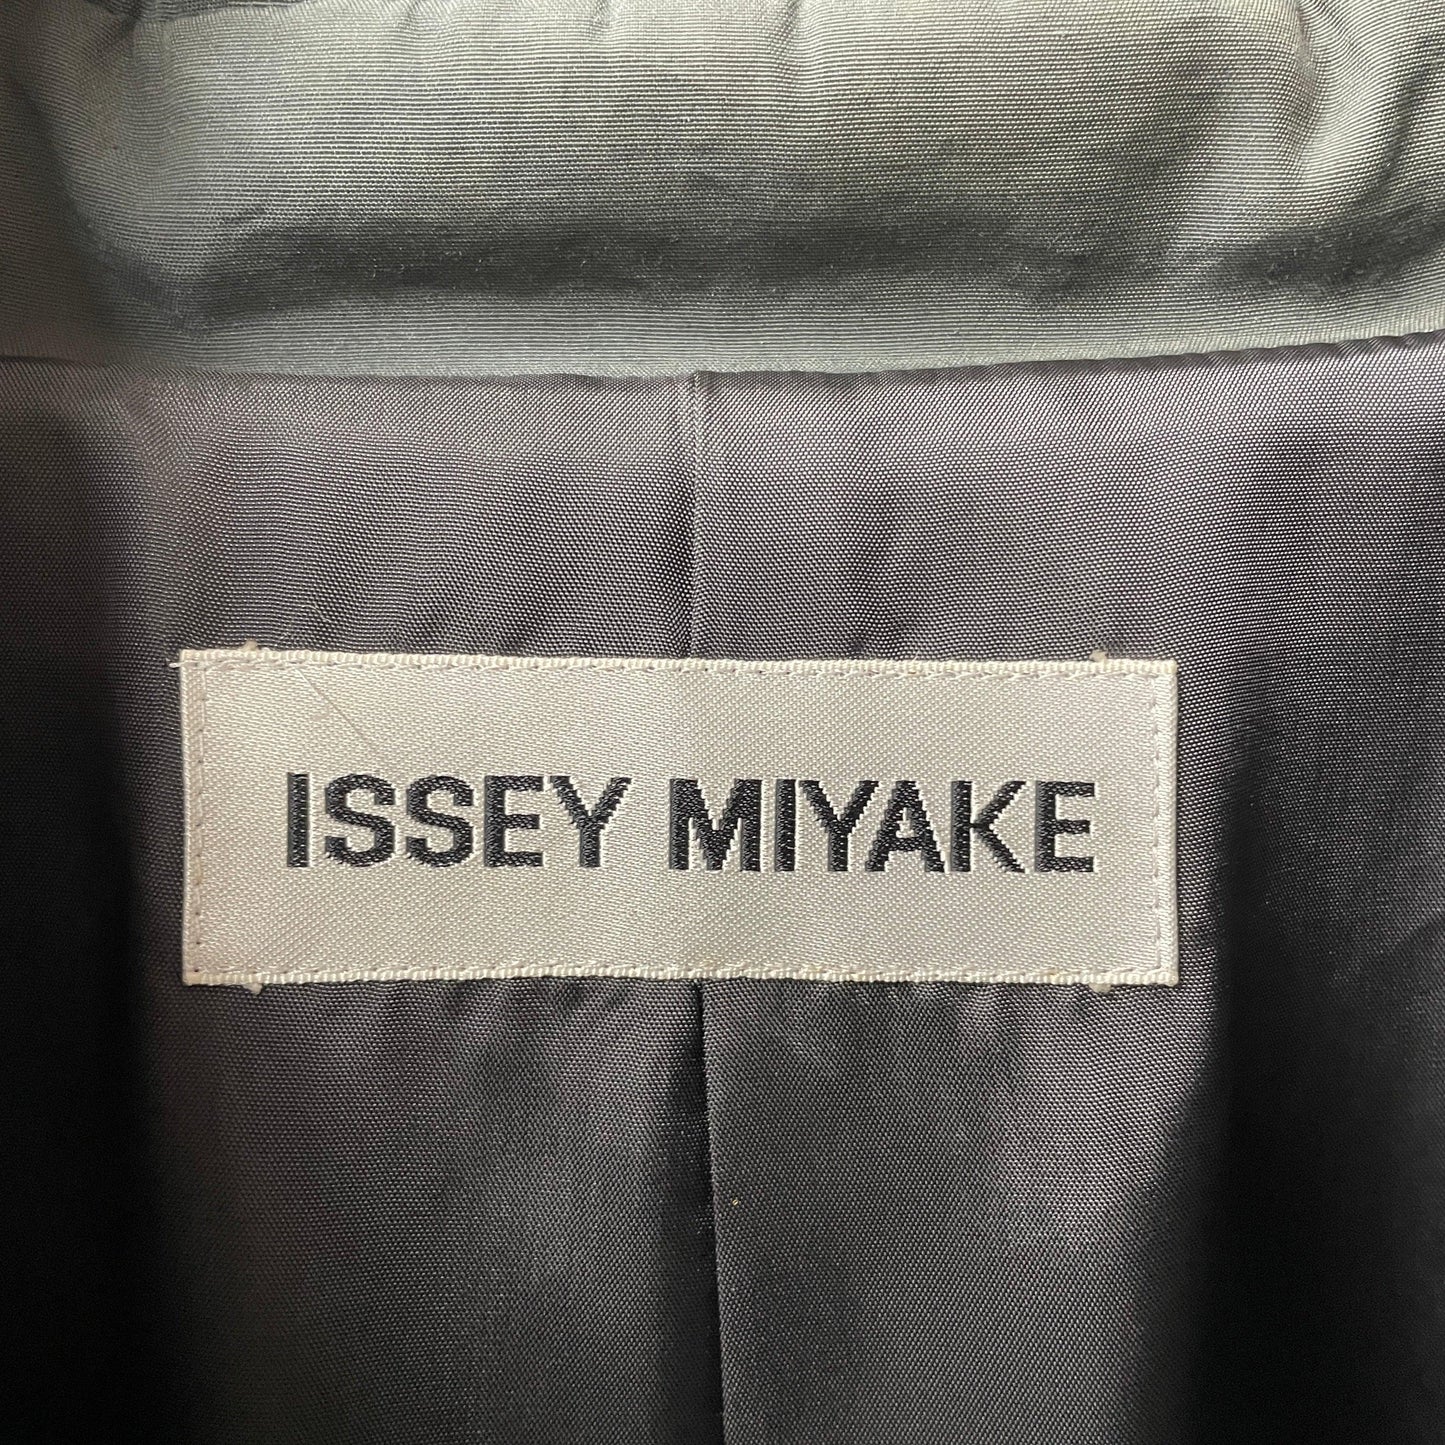 Issey miyake coat